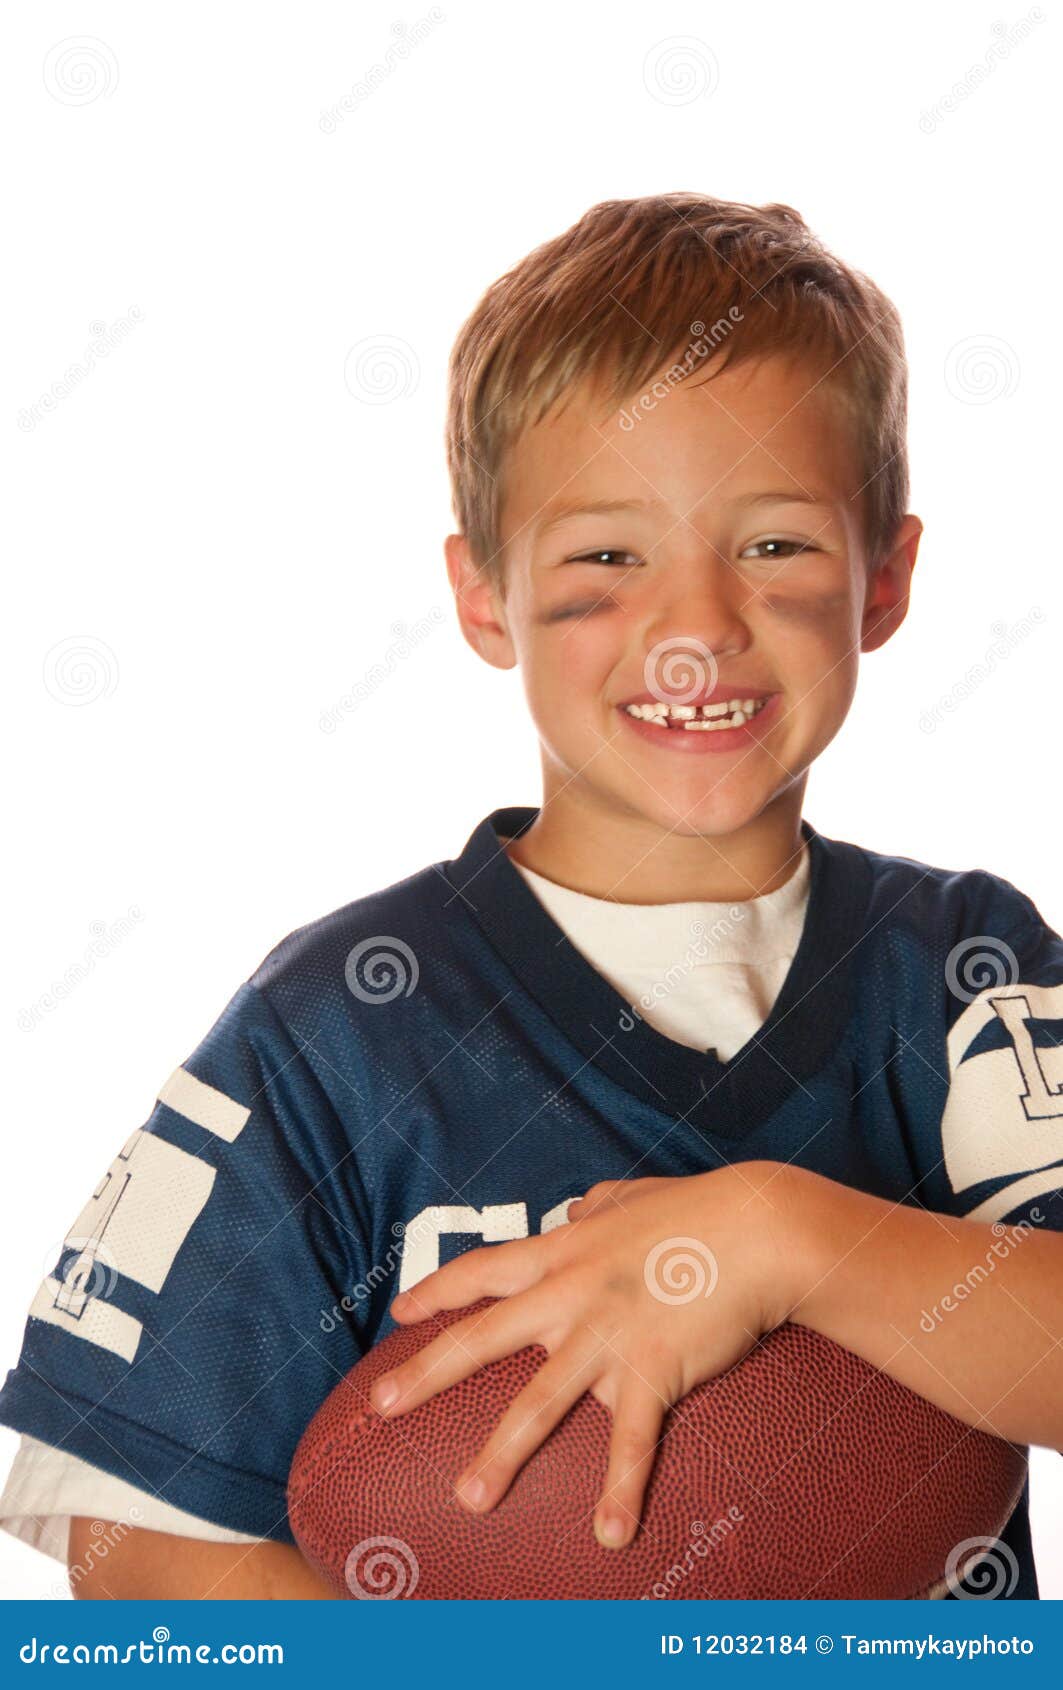 little boy football jersey